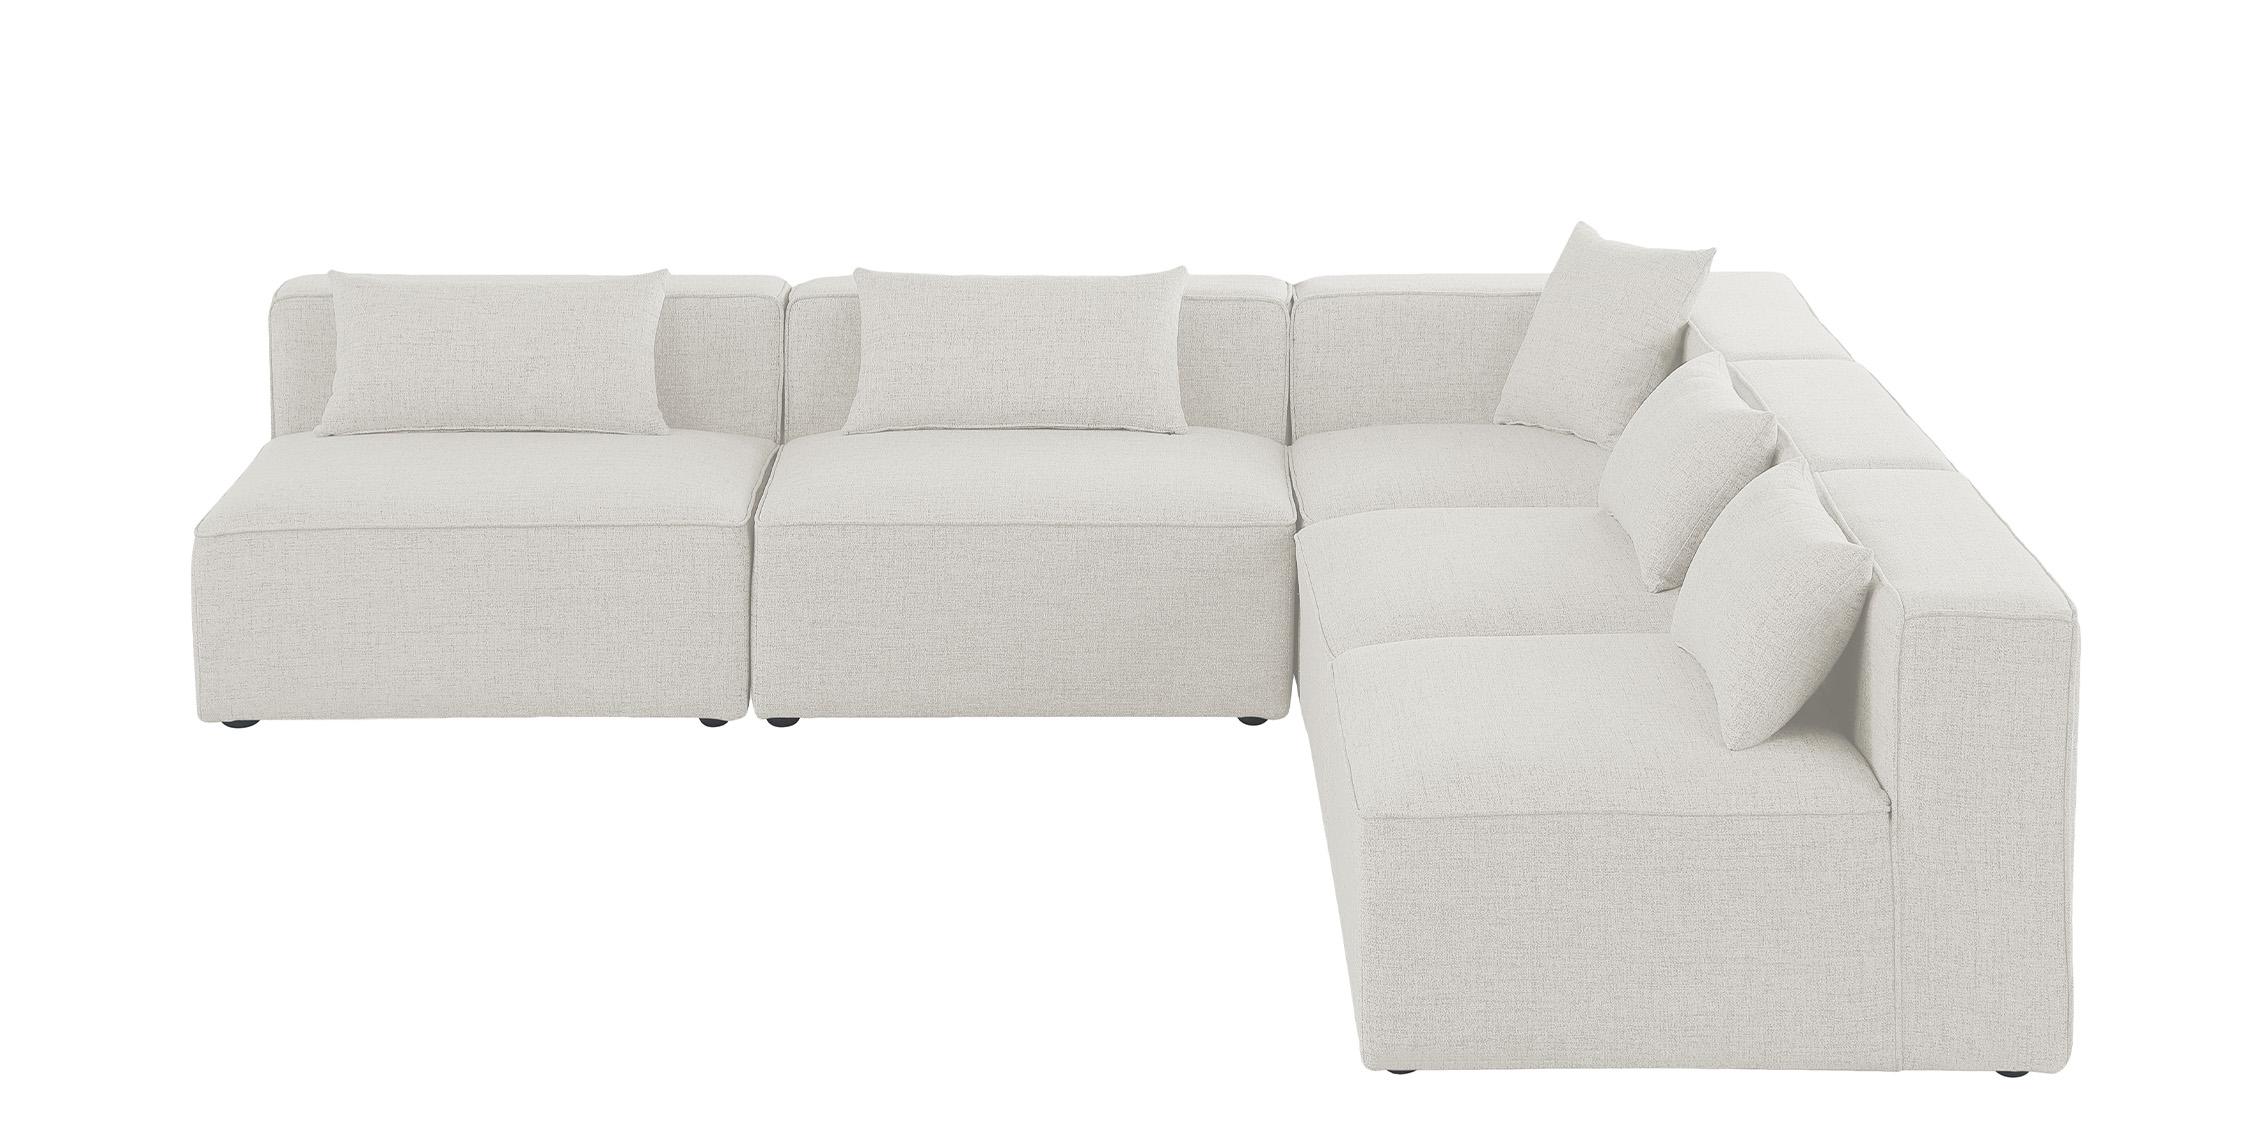 

    
Meridian Furniture CUBE 630Cream-Sec5B Modular Sectional Sofa Cream 630Cream-Sec5B
